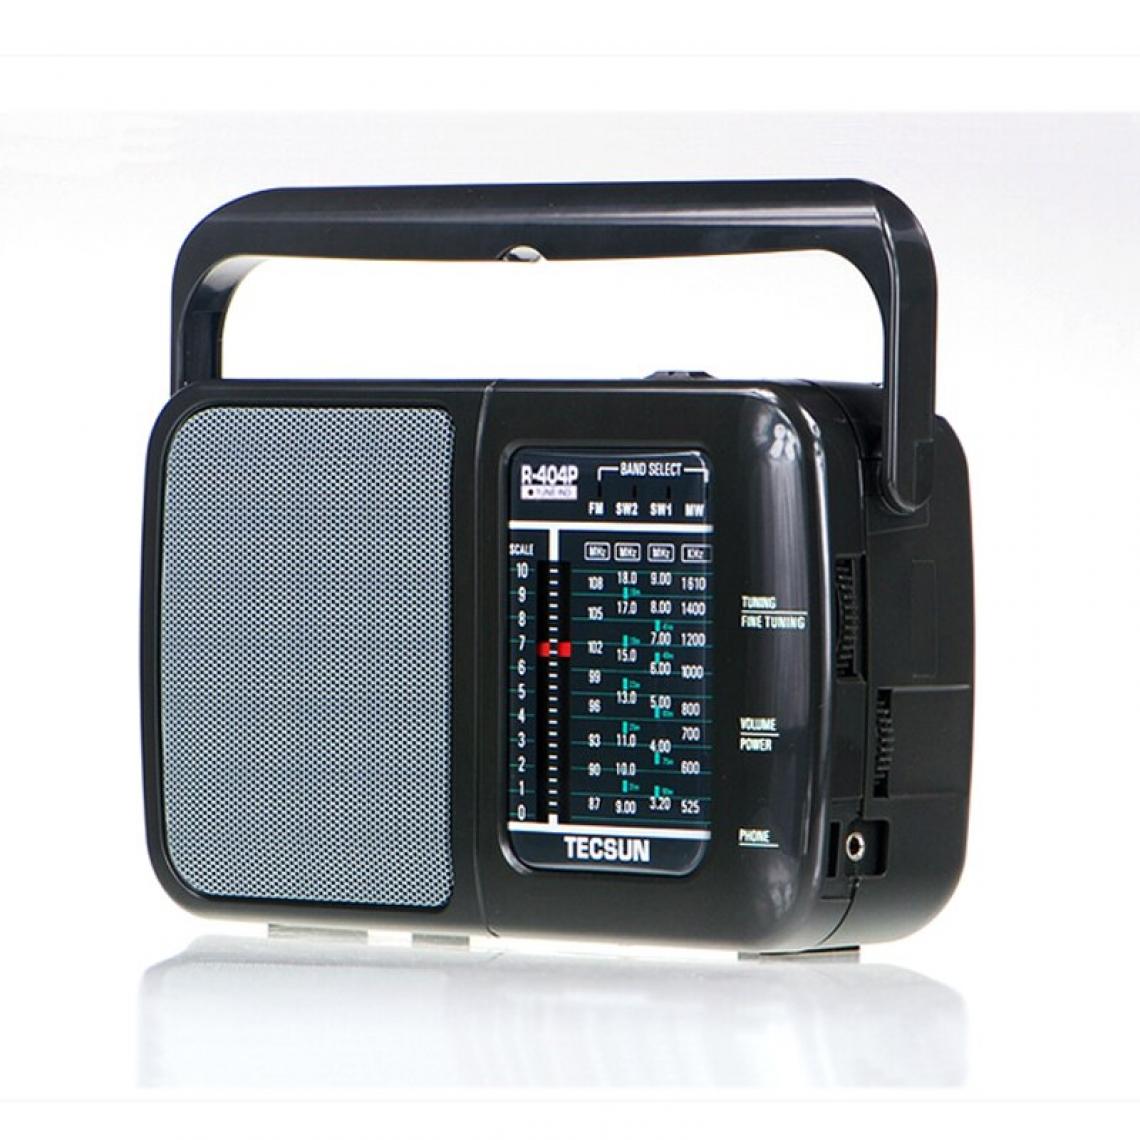 Universal - Récepteur DSP FM/SW/MW Récepteur radio haute sensibilité avec haut-parleur(Le noir) - Radio